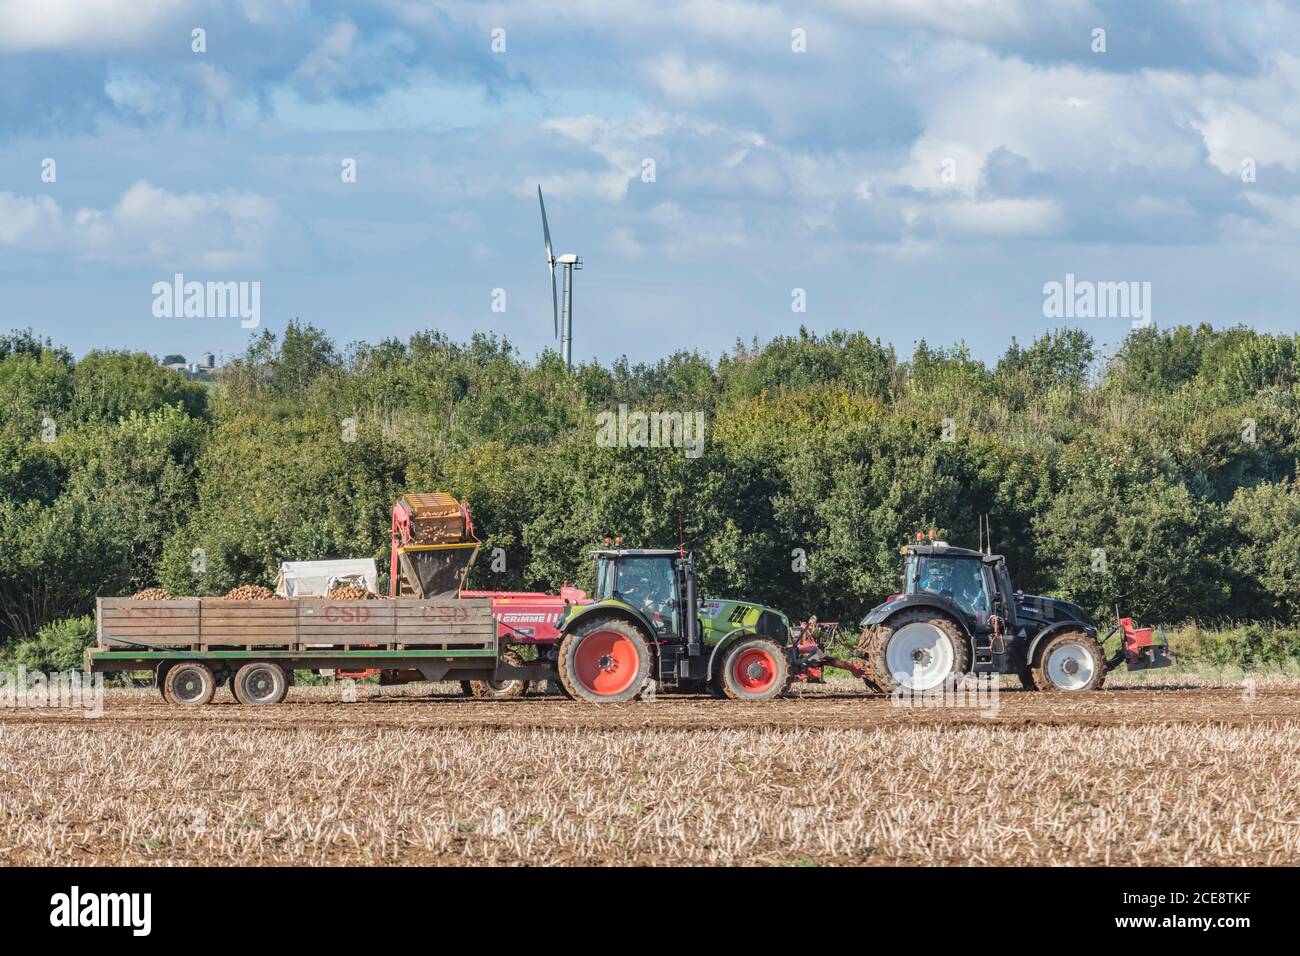 2020 UK Kartoffelernte mit Grimme Kartoffelerntemaschine gezogen von Valtra Traktor & Anhänger gezogen von Claas Arion 640 Traktor. Britische Lebensmittelerzeuger. Stockfoto